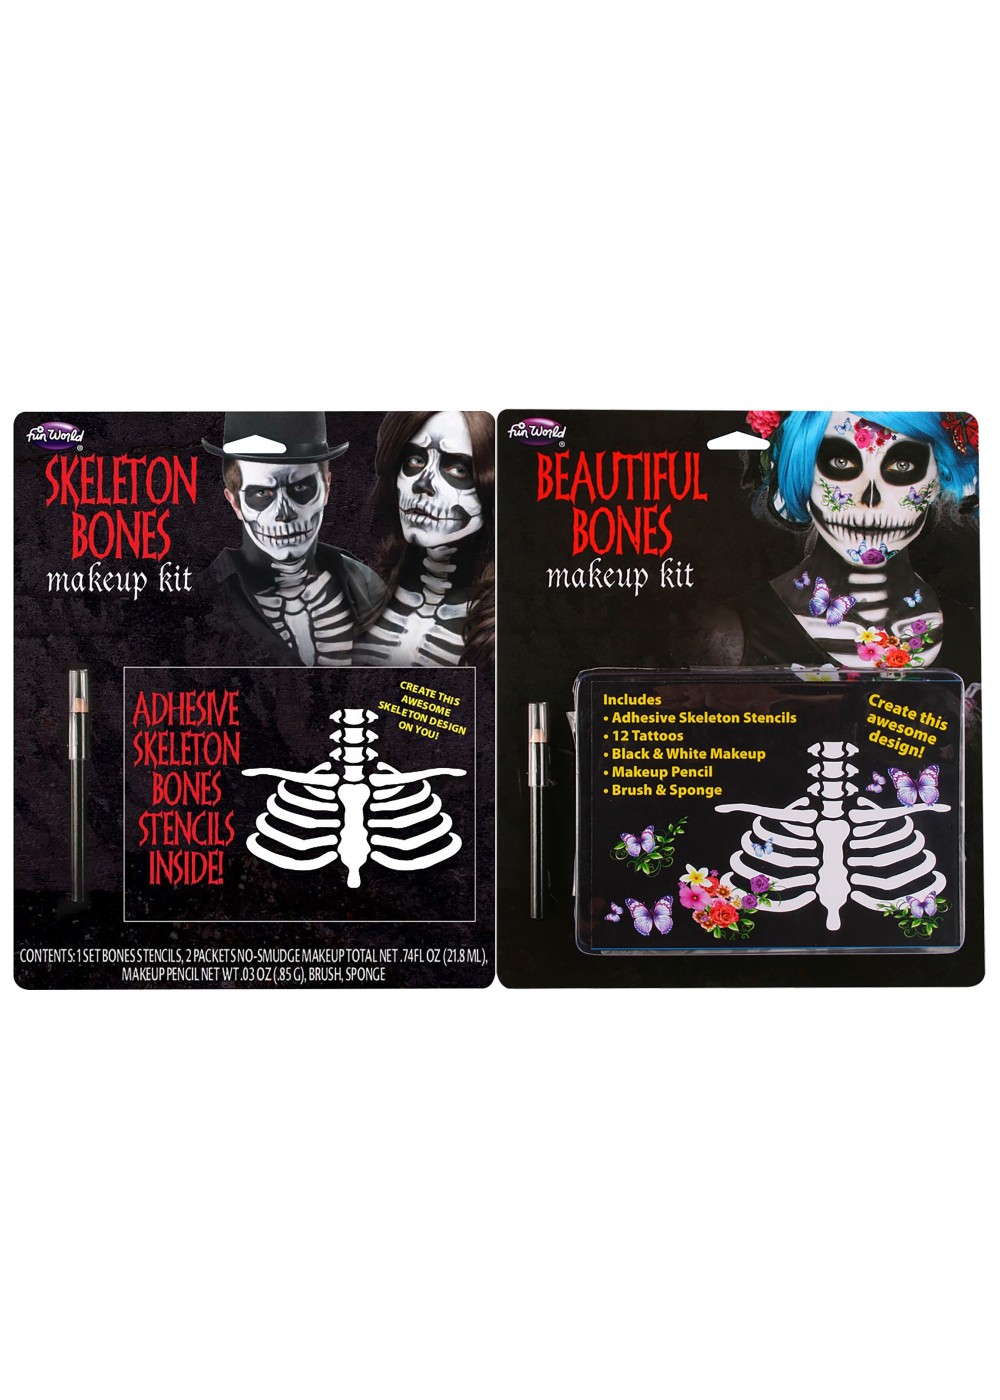 Beautiful Bones Or Skeleton Bones Makeup Kit